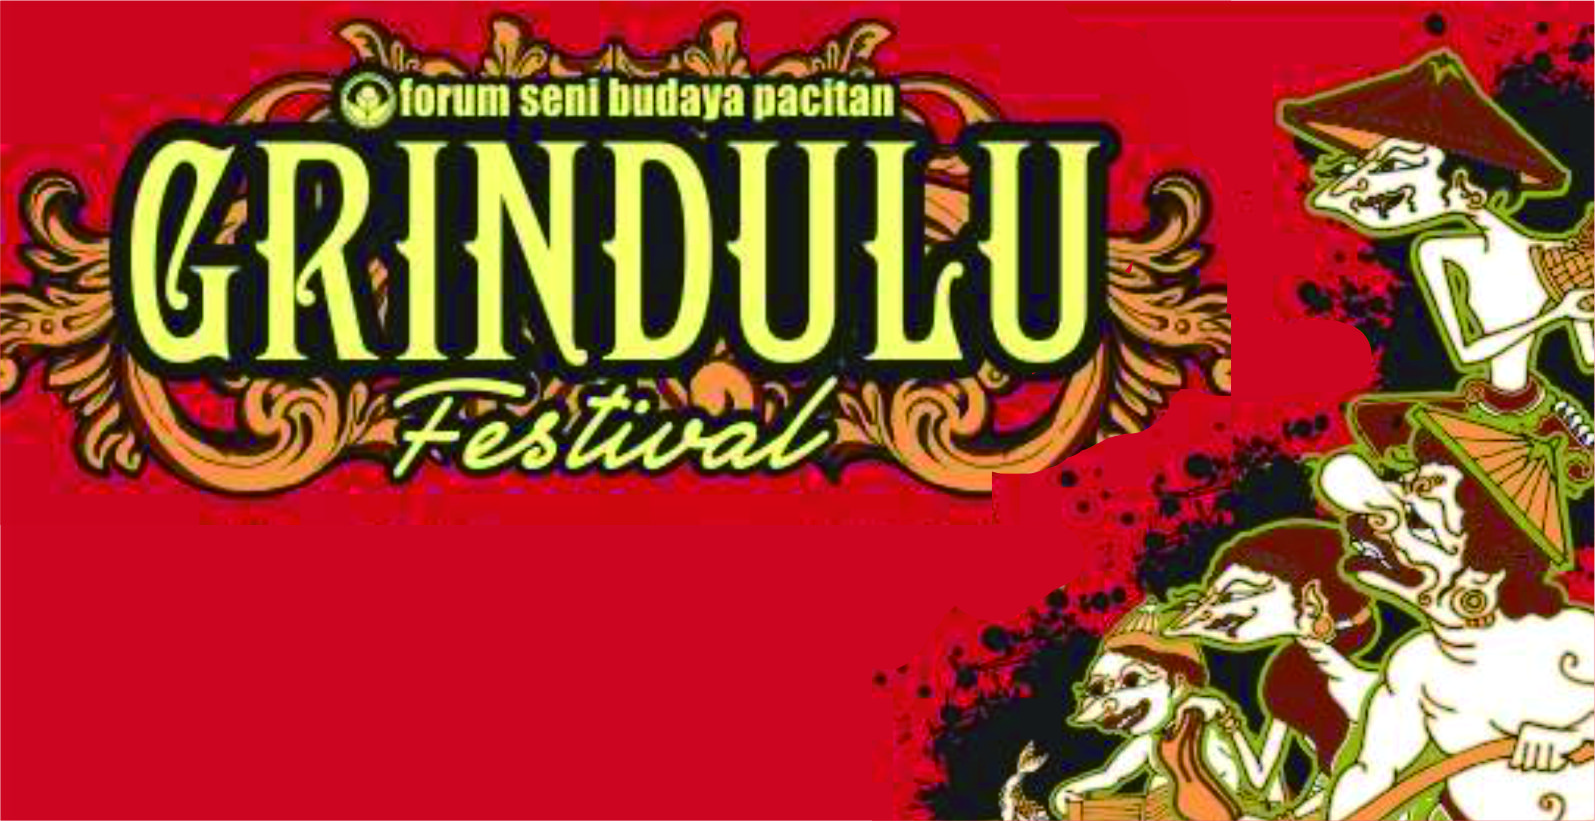 Grindulu Festival yang digelar pekan depan (Graphic by Forum Seni Budaya Pacitan/Panitia)